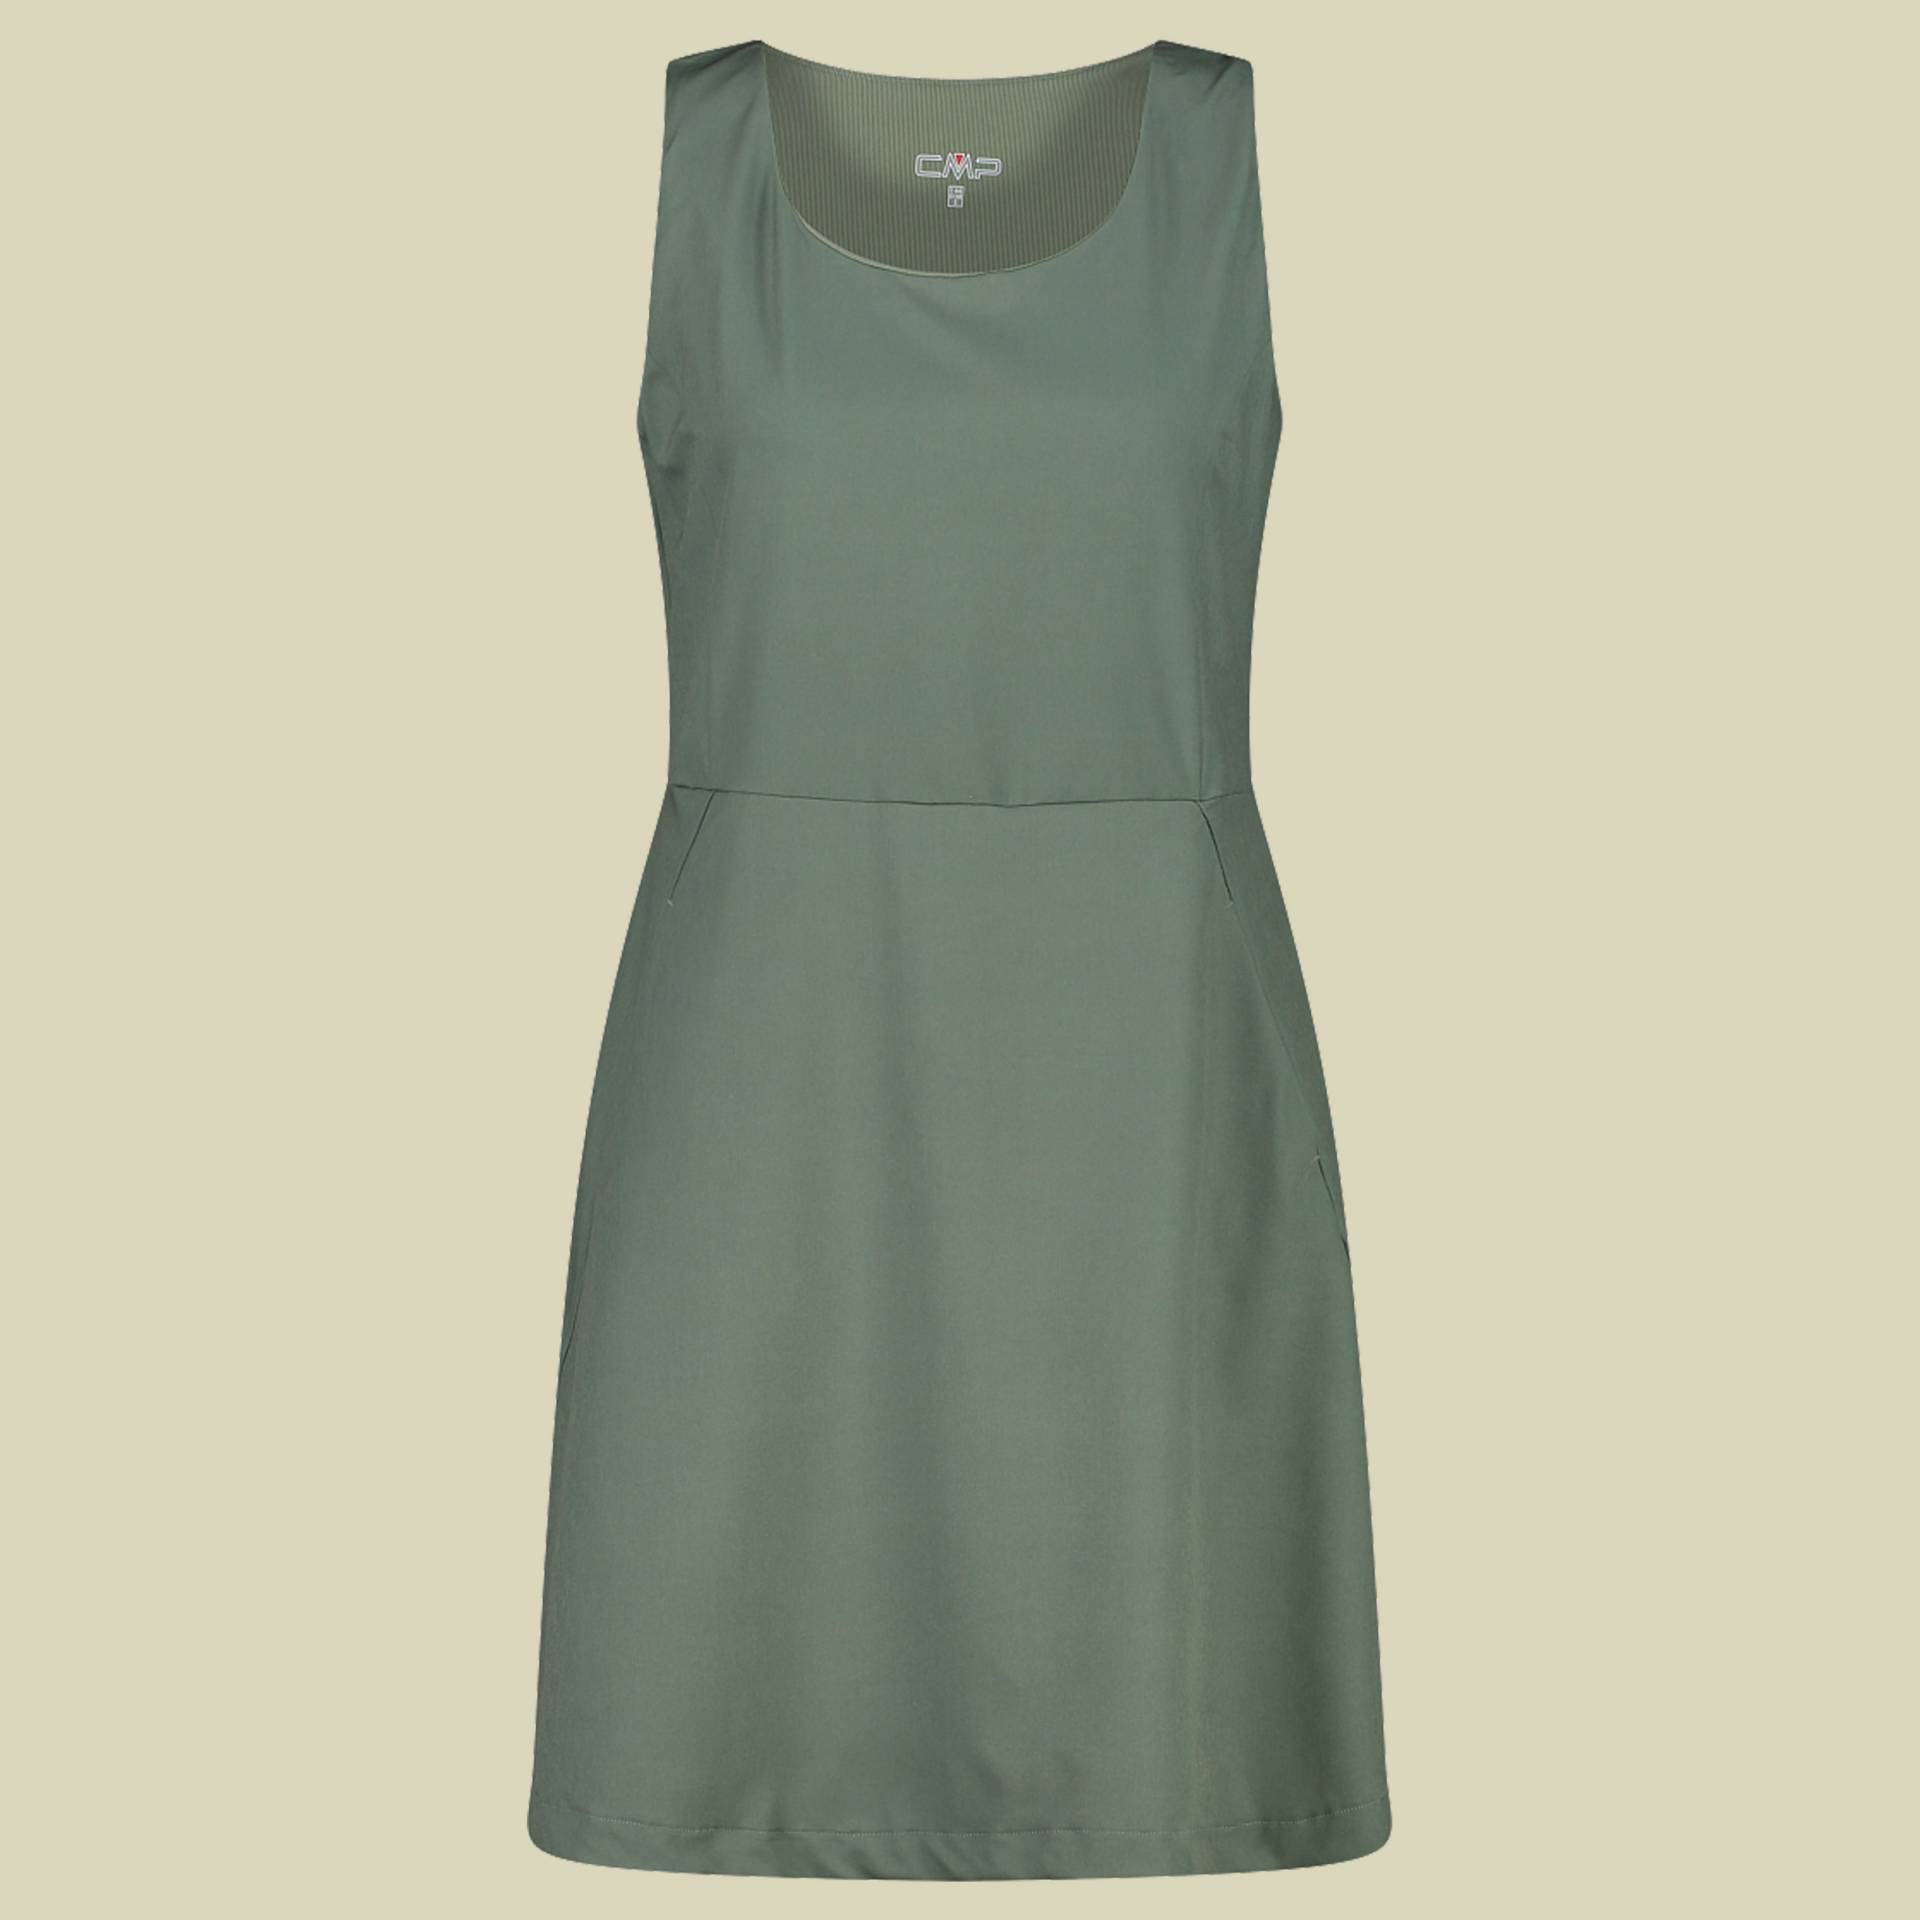 Woman Dress 34S7986 40 grün - E452 salvia von CMP